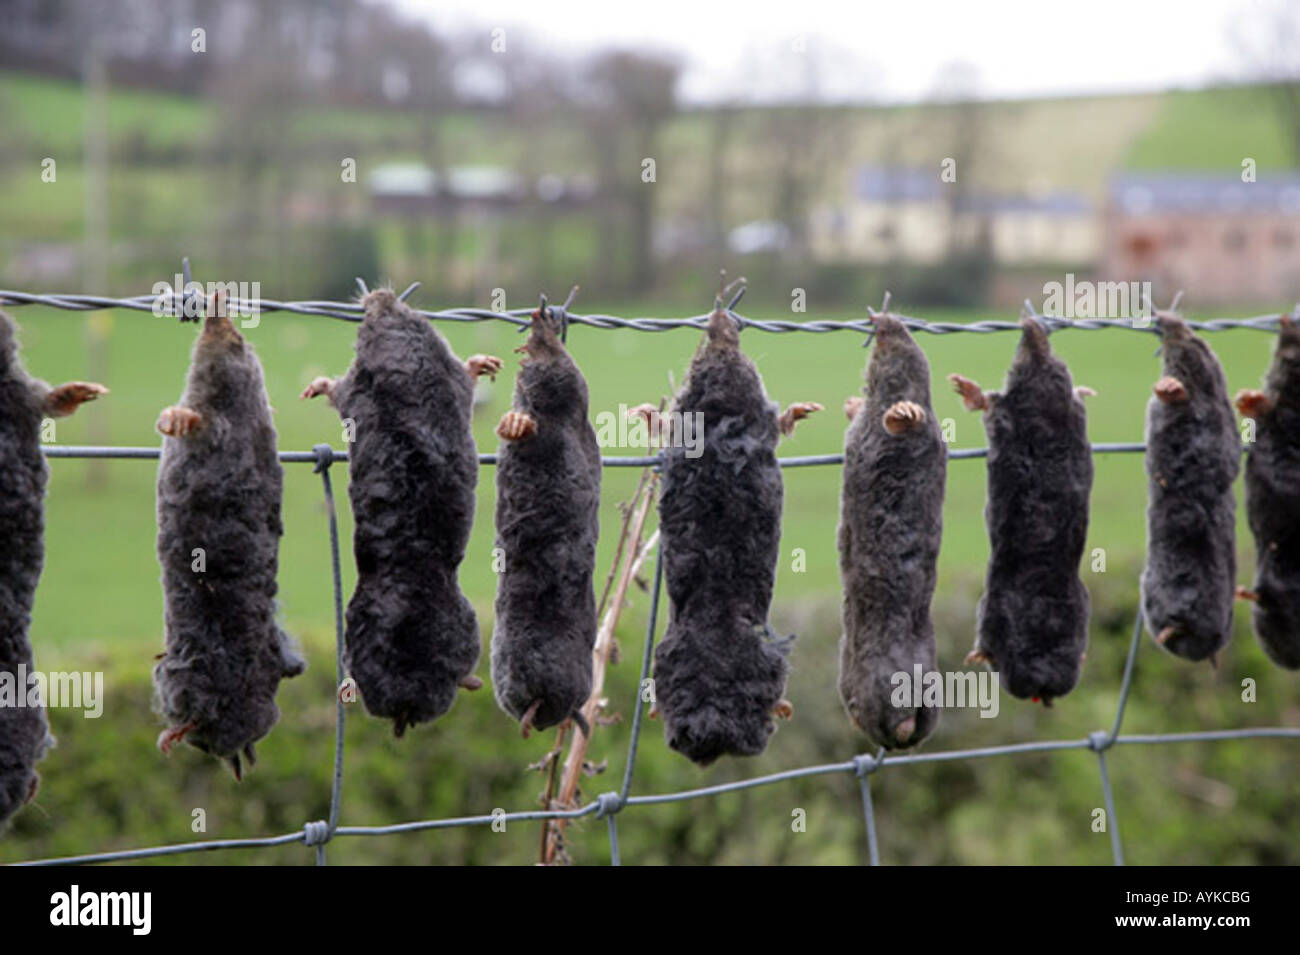 El método tradicional de la mole CATCHER,S,COUNT visto aquí en primavera en una granja en Ayrshire, Escocia, Reino Unido. Foto de stock